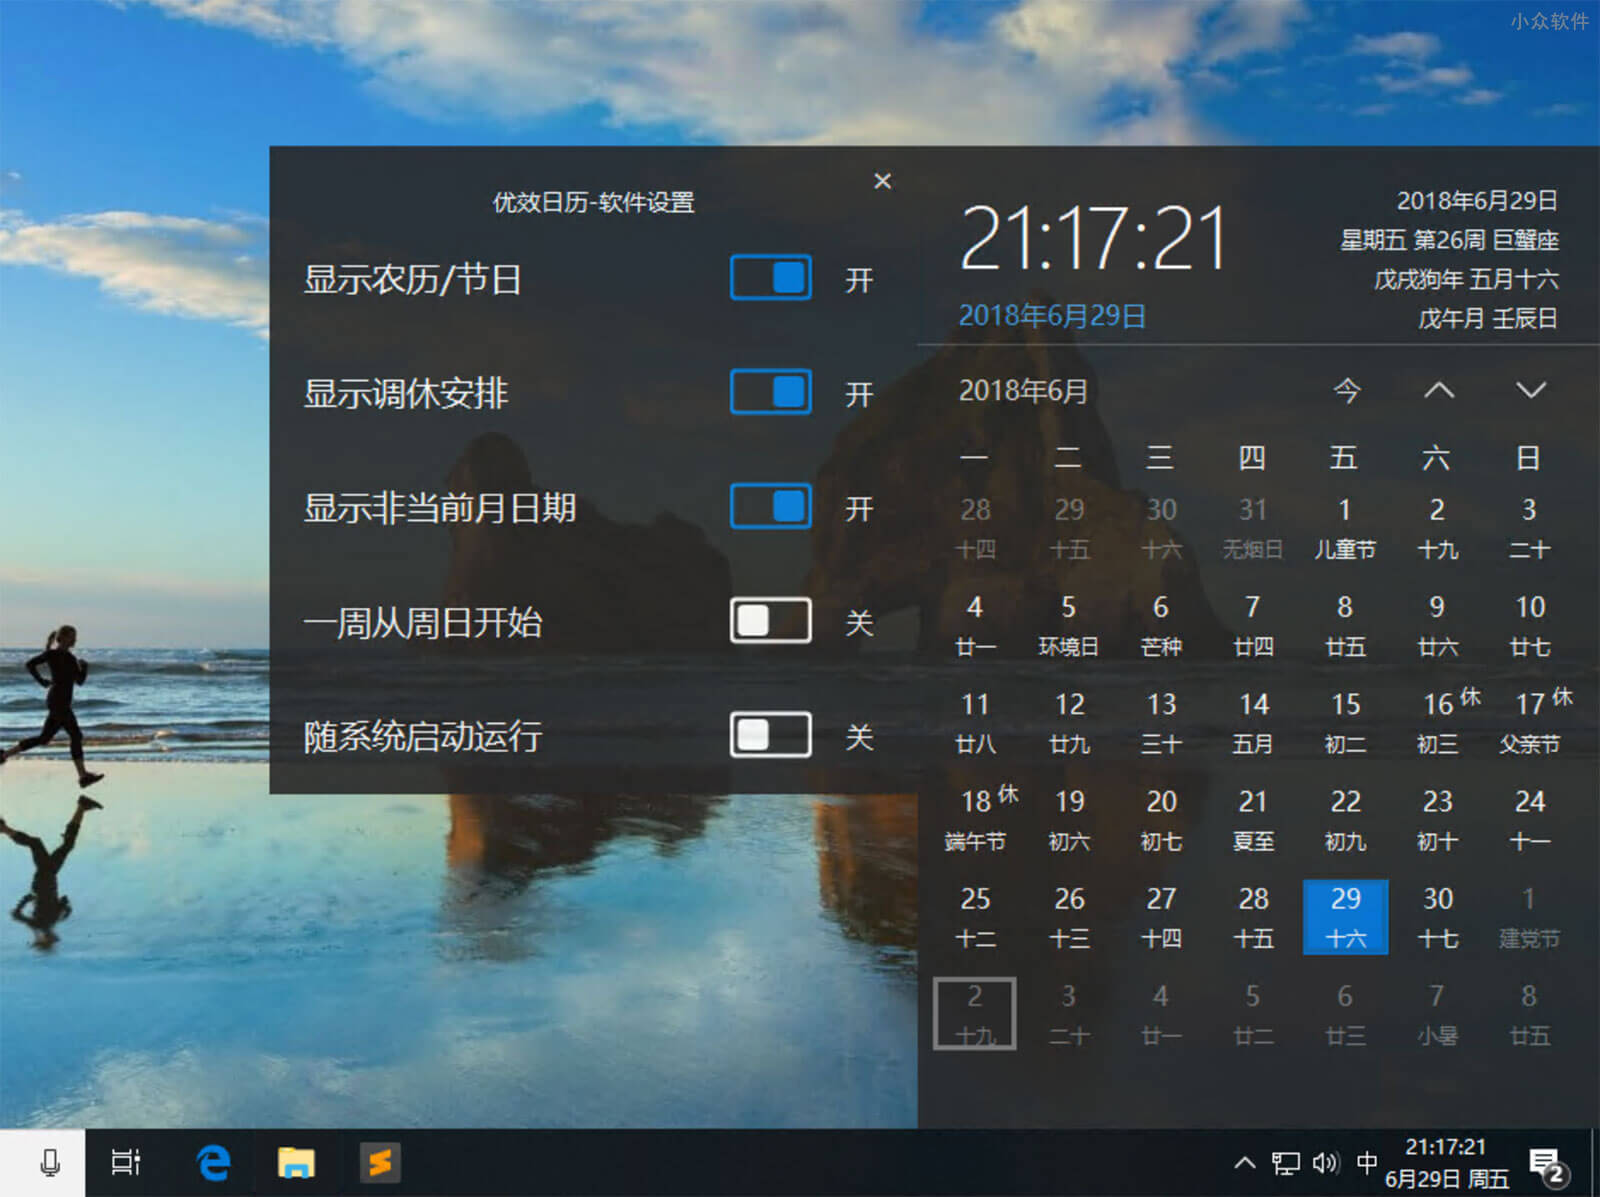 优效日历 - 替换 Windows 10 原生日历，提供年视图、节假日等信息 1